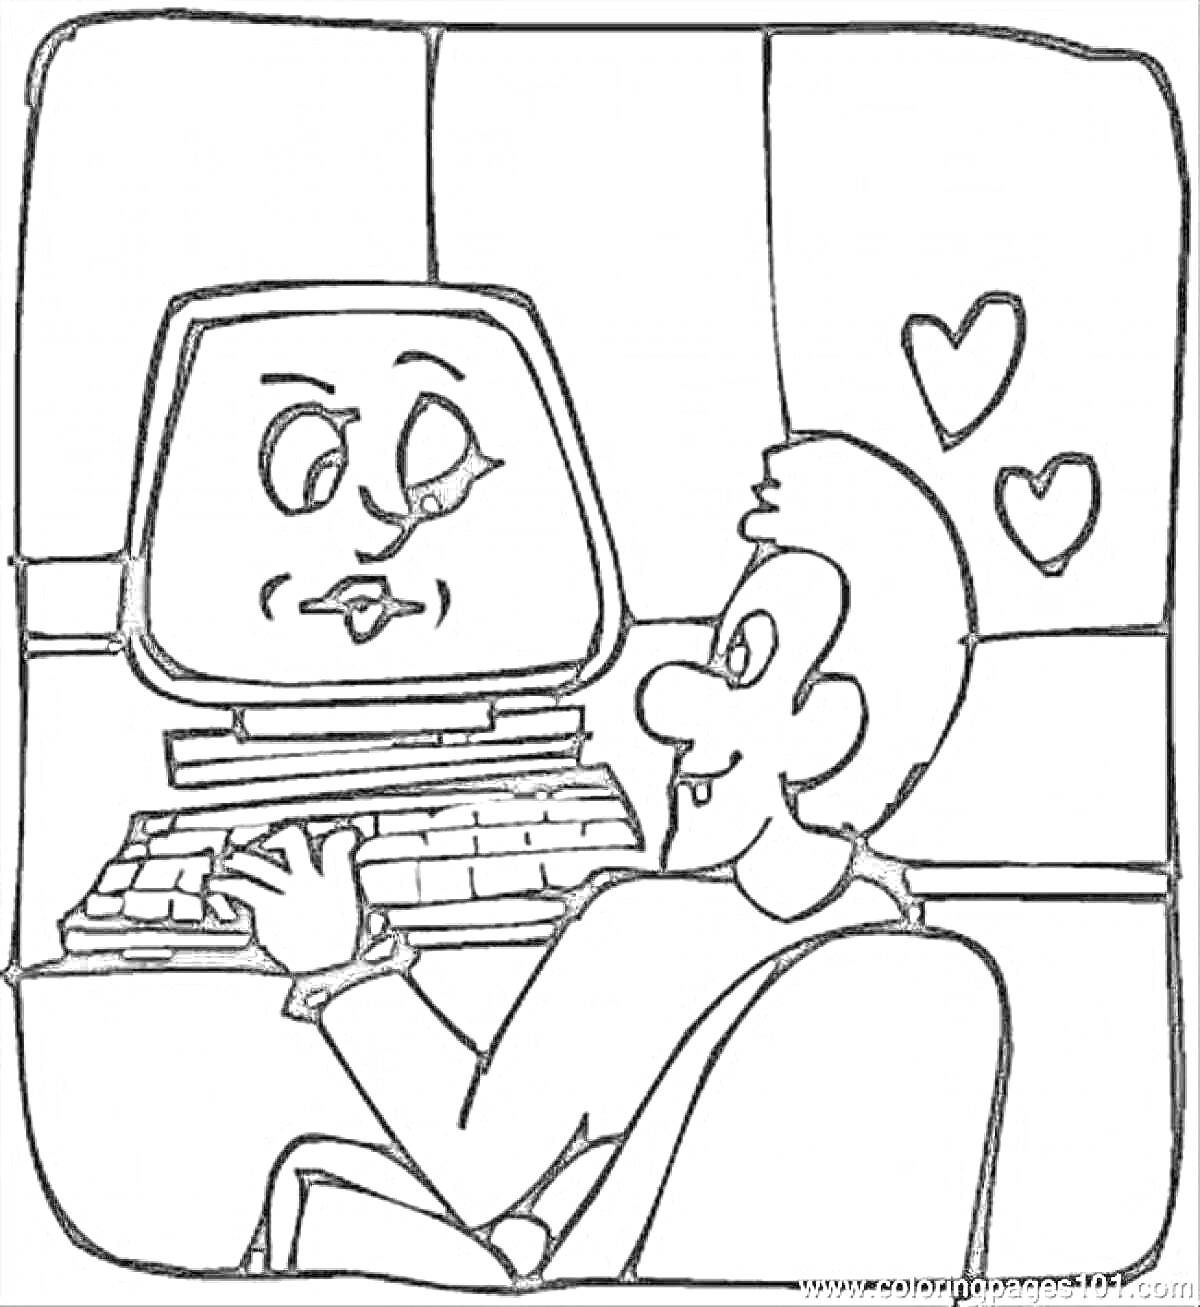 Раскраска Программист сидит за компьютером с экраном в виде лица, вокруг летят сердечки